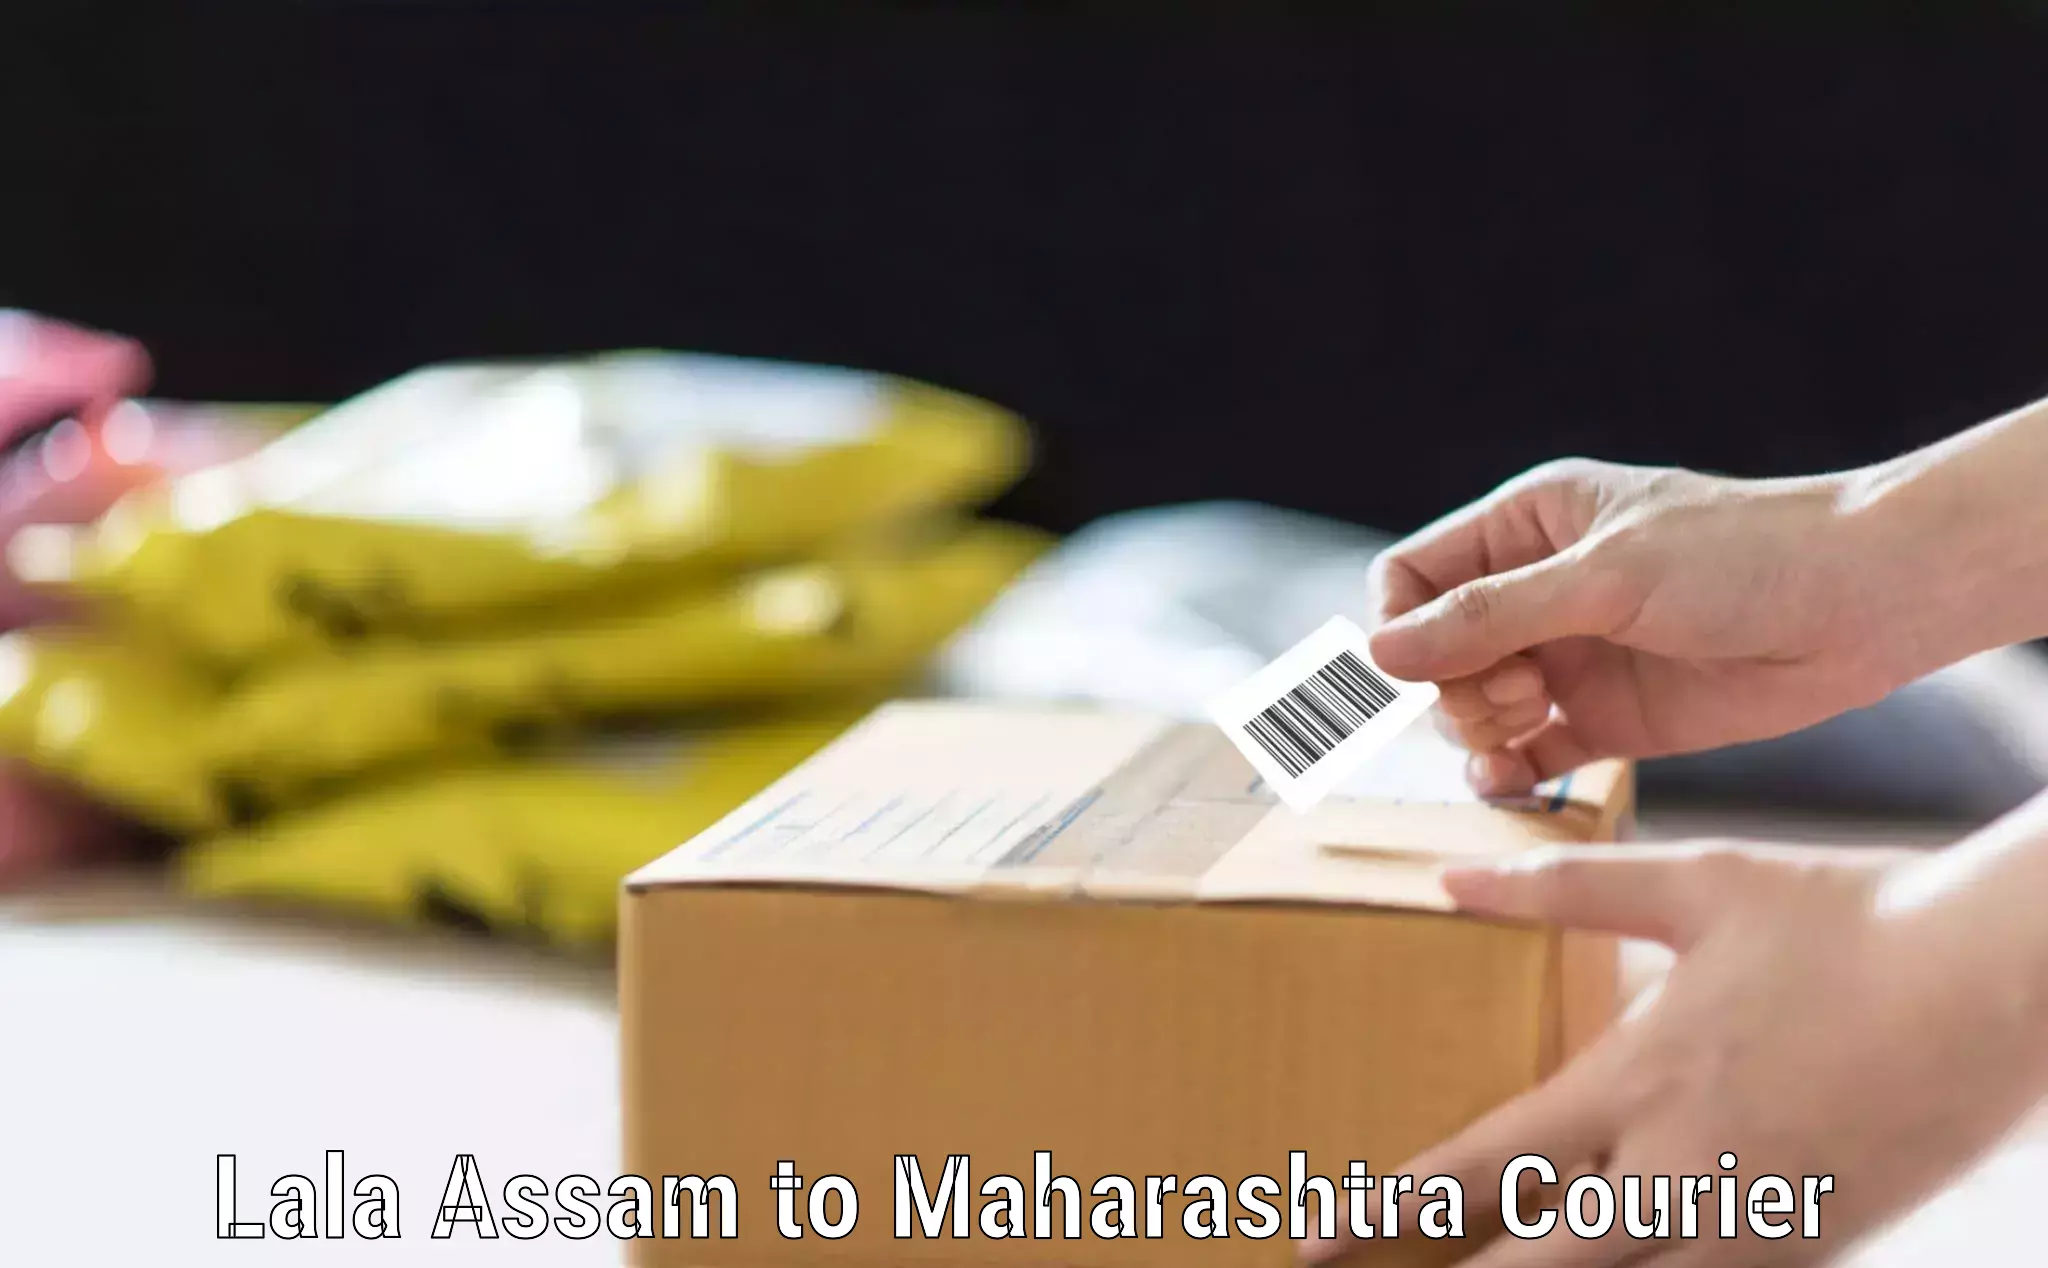 Luggage transport deals Lala Assam to Mahabaleshwar